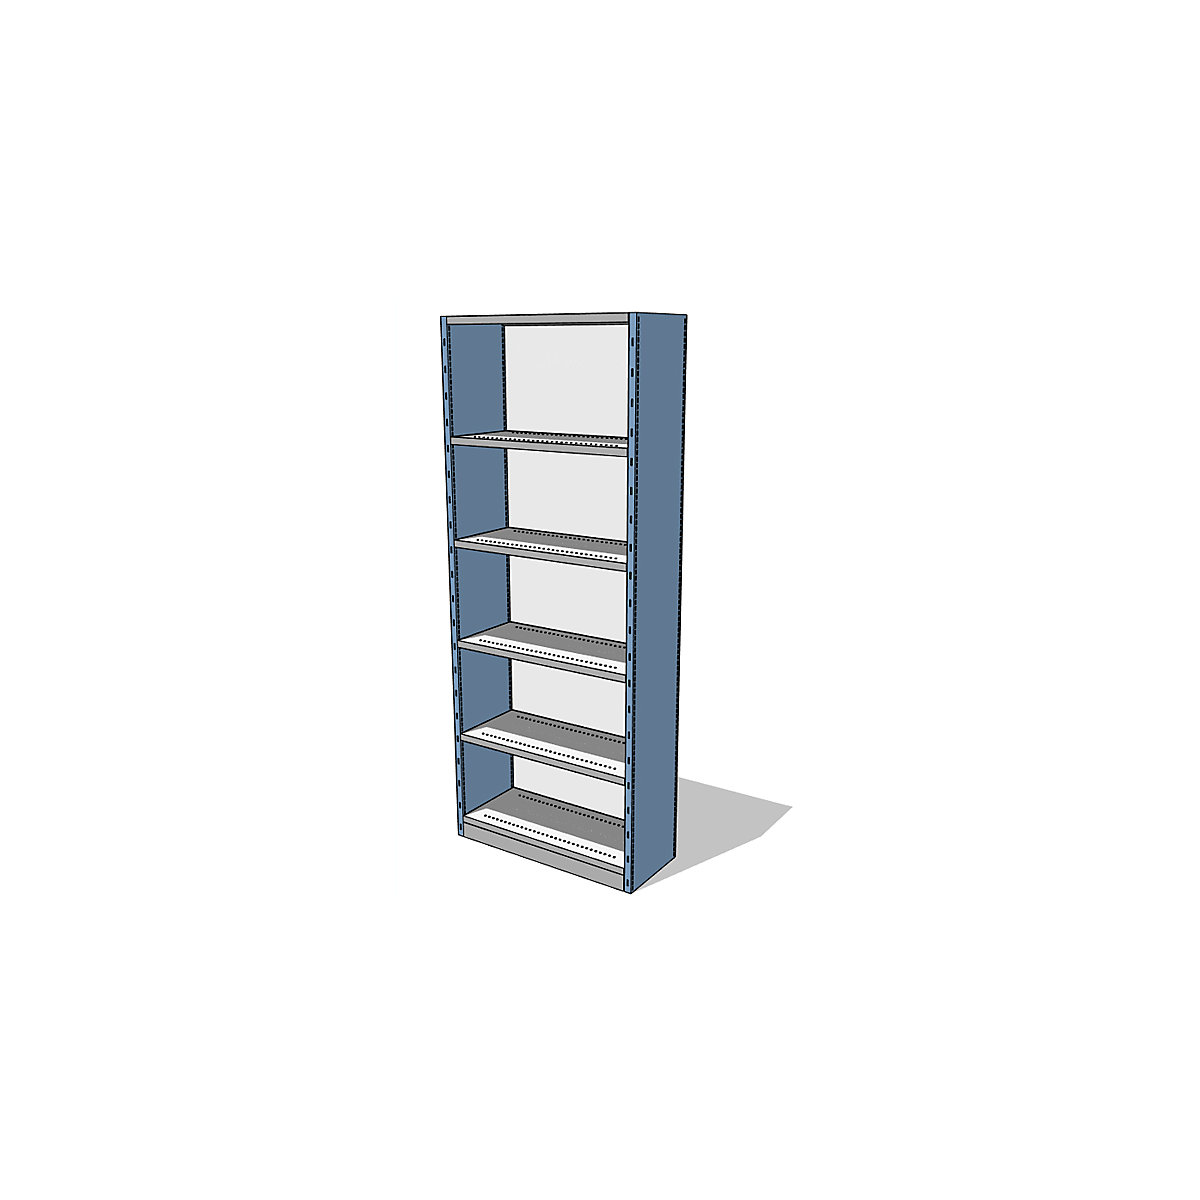 Sistema de estantes e armários com painéis laterais e traseiro, altura da estante 2500 mm, estante básica largura x profundidade 930 x 400 mm-4